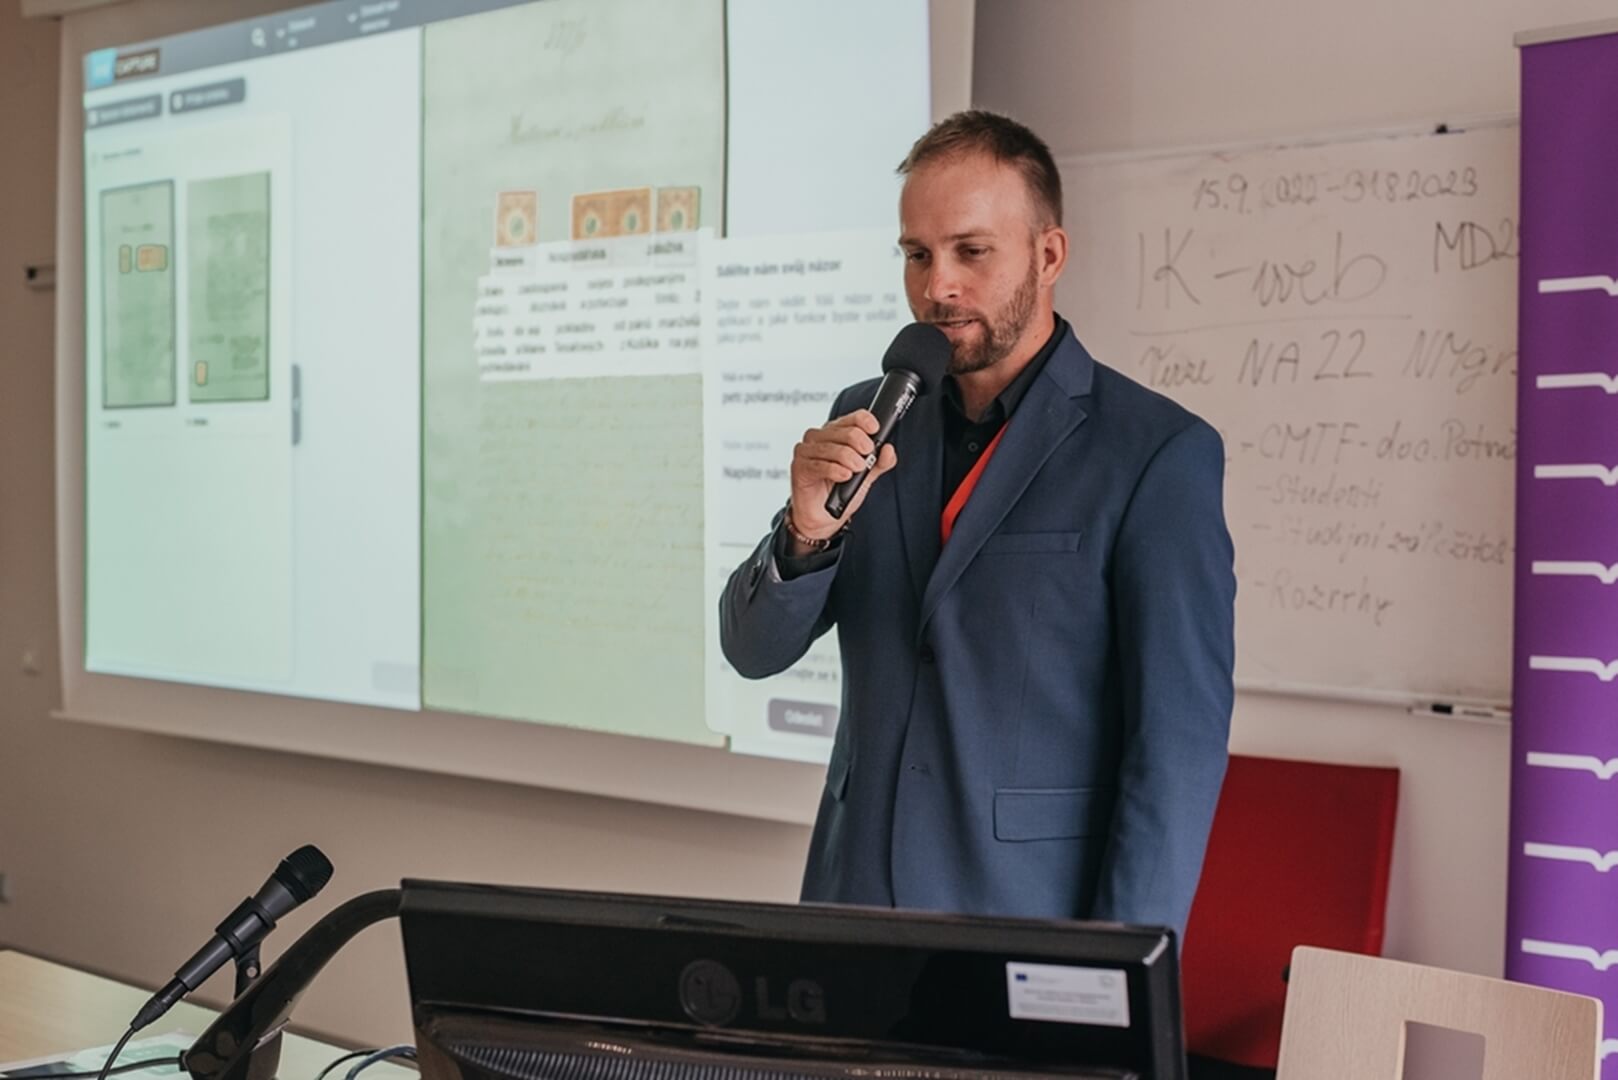 Konference Knihovny současnosti 2022 - prezentace společnosti EXON, přednáška, Petr Polanský.